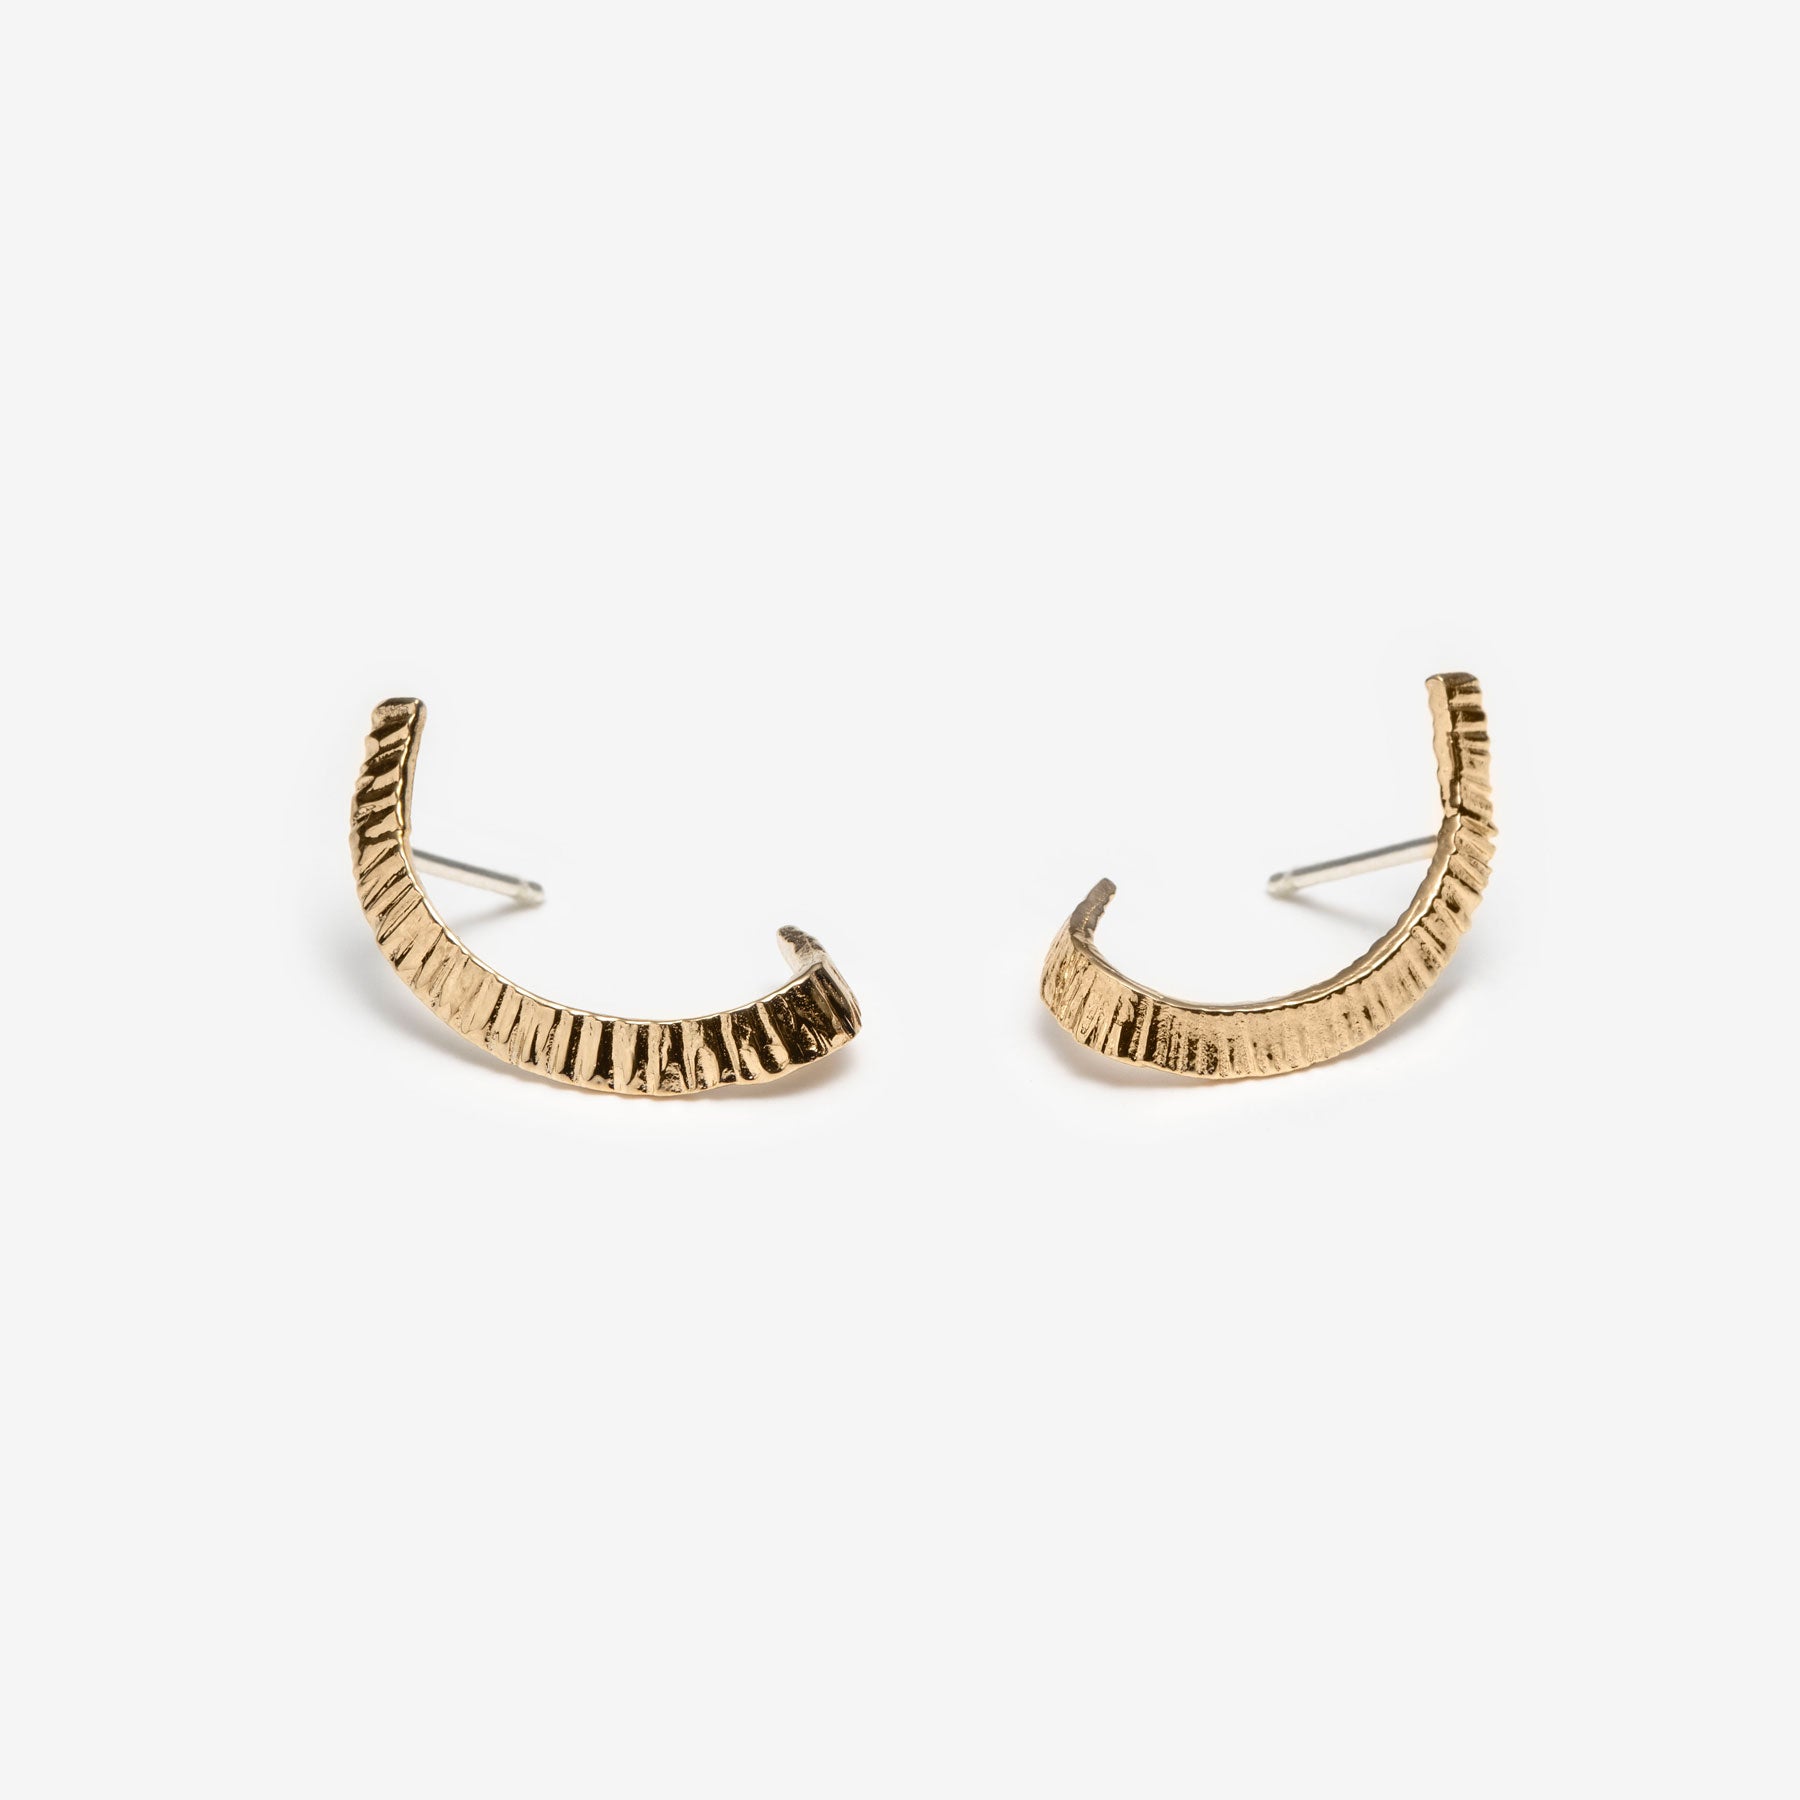 Phoenix Ear Climber Earrings in Vintage Gold | Kendra Scott